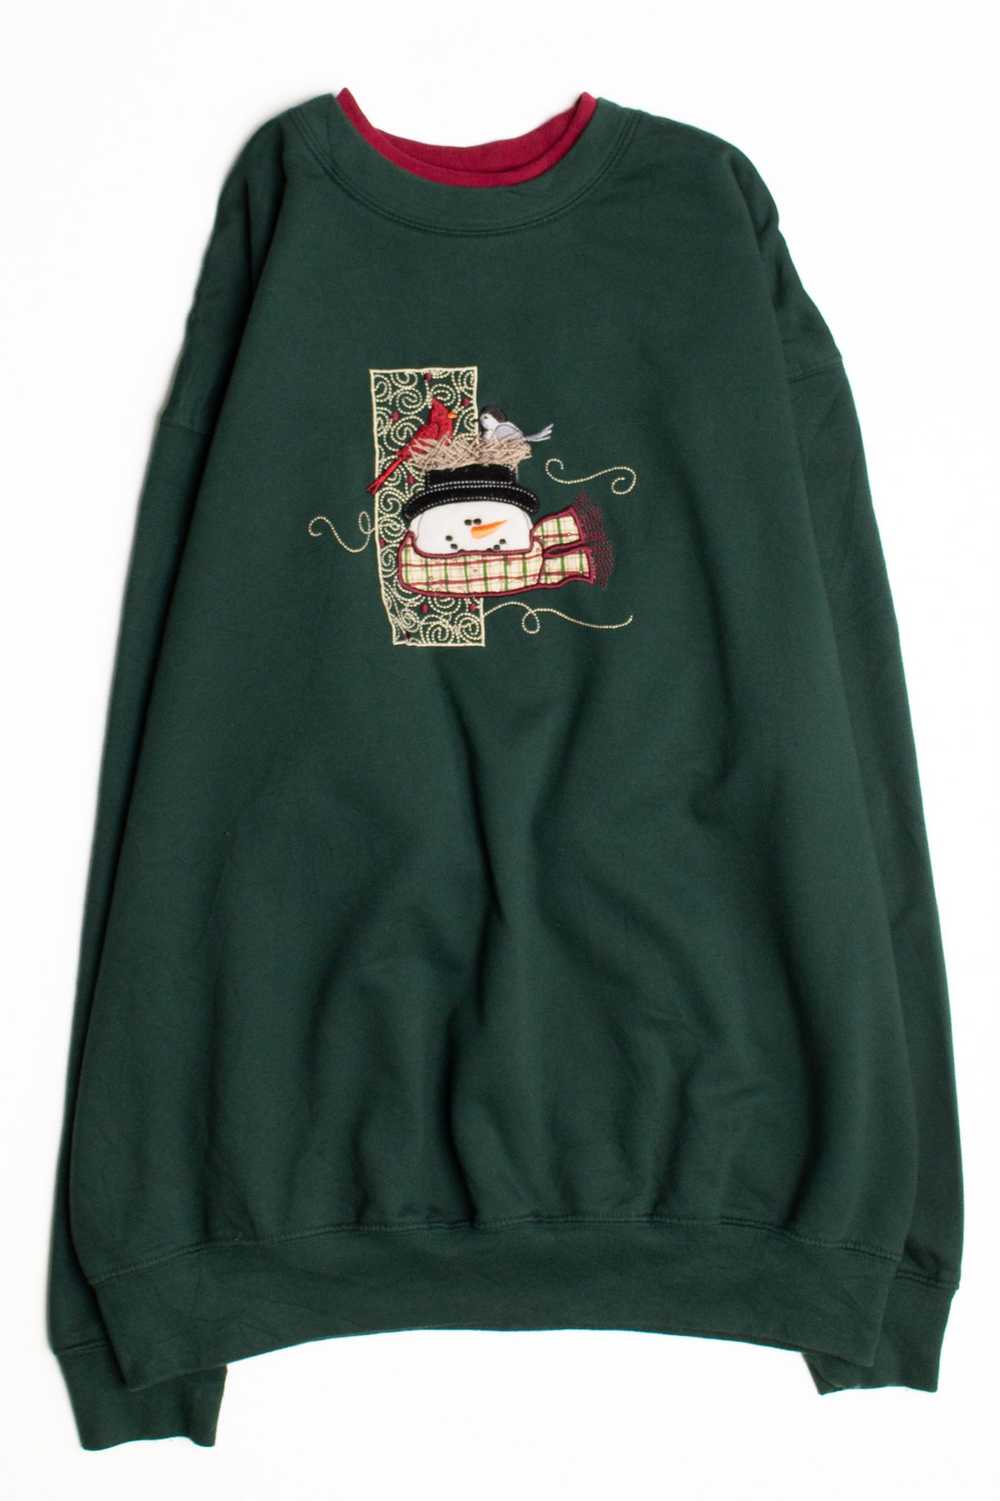 Green Ugly Christmas Sweatshirt 58776 - image 1